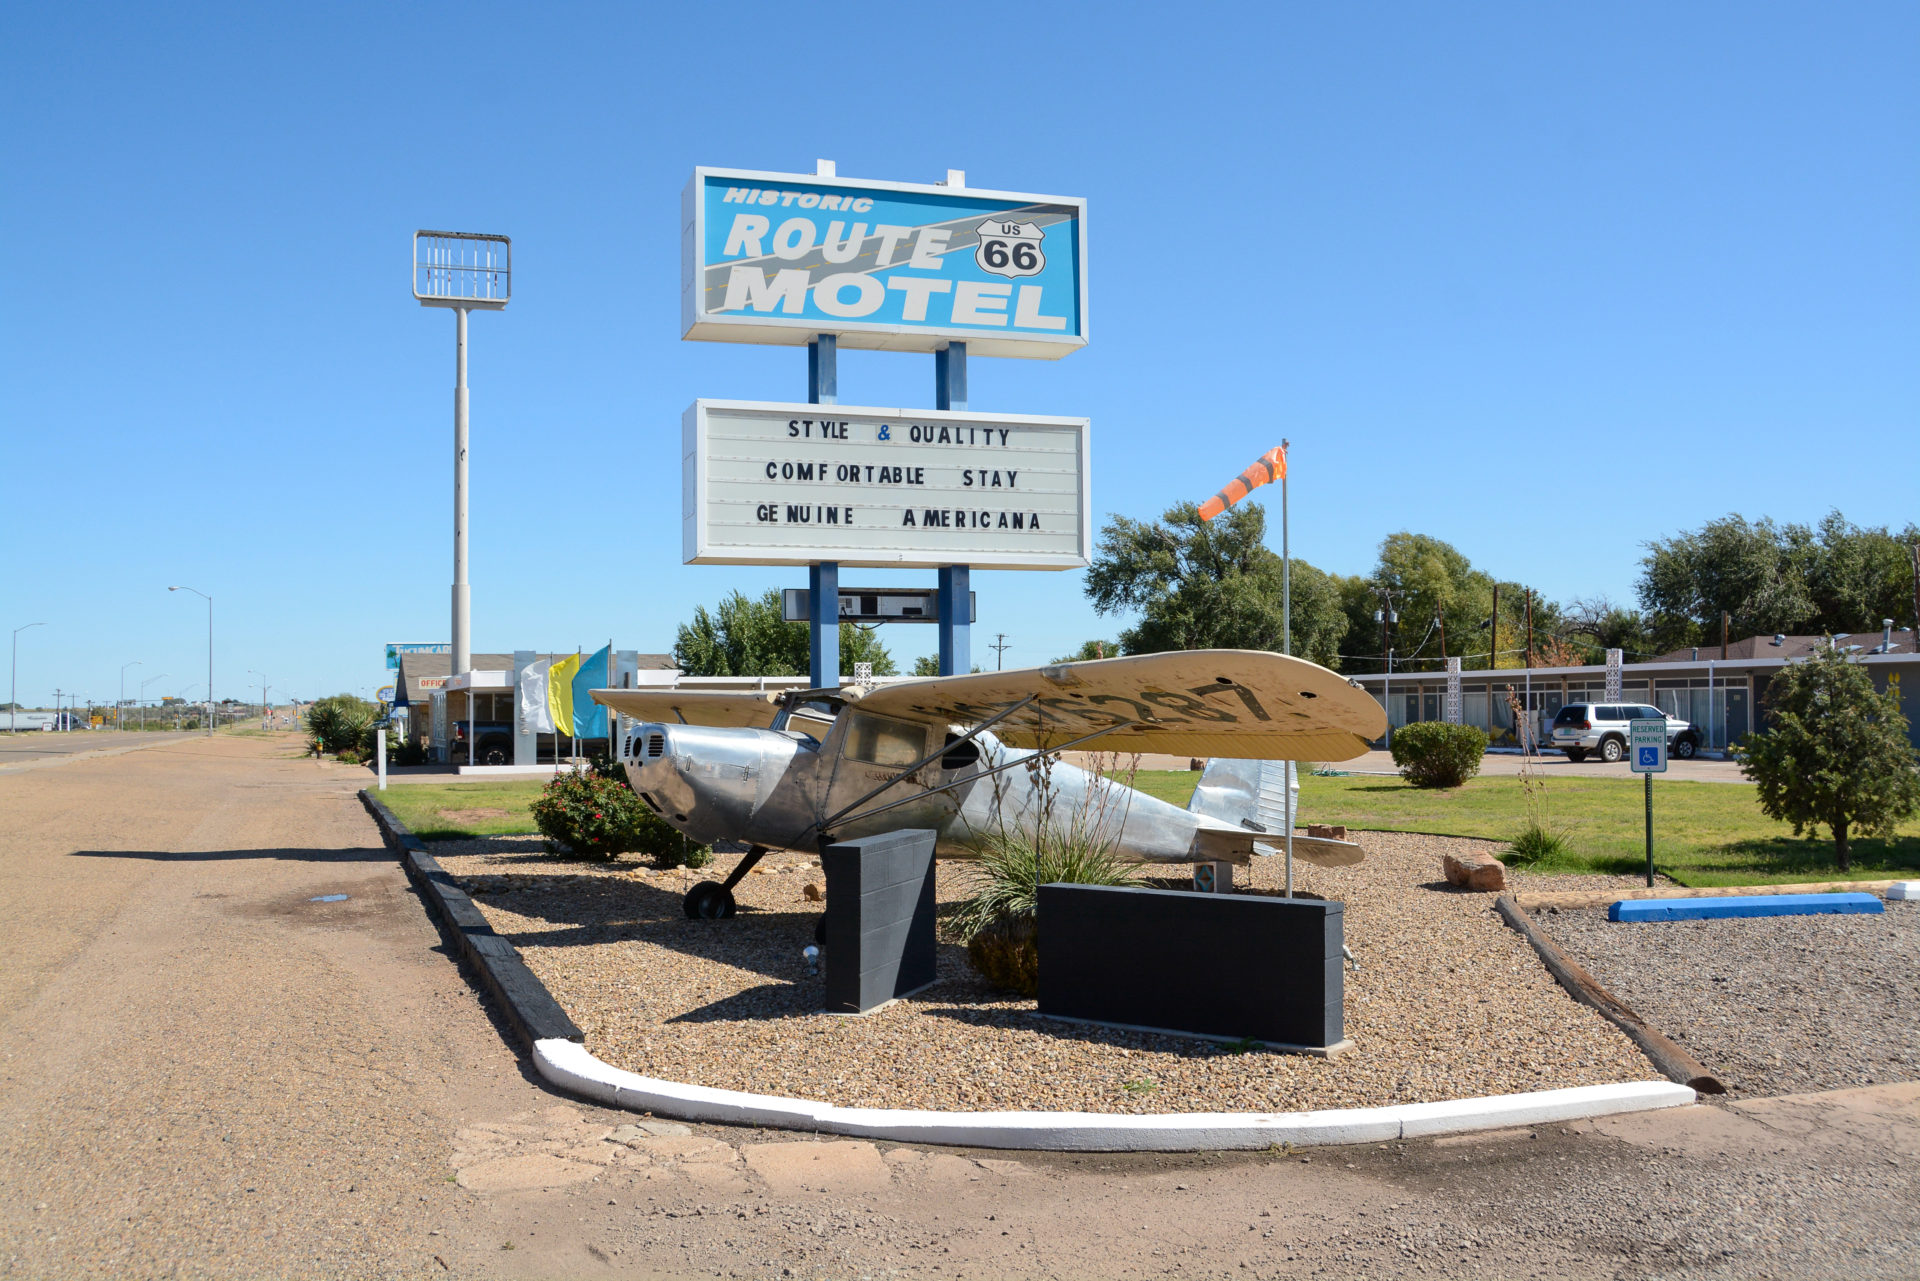 Flugzeug vor dem Historic Route 66 Motel in Tucumcari, New Mexico